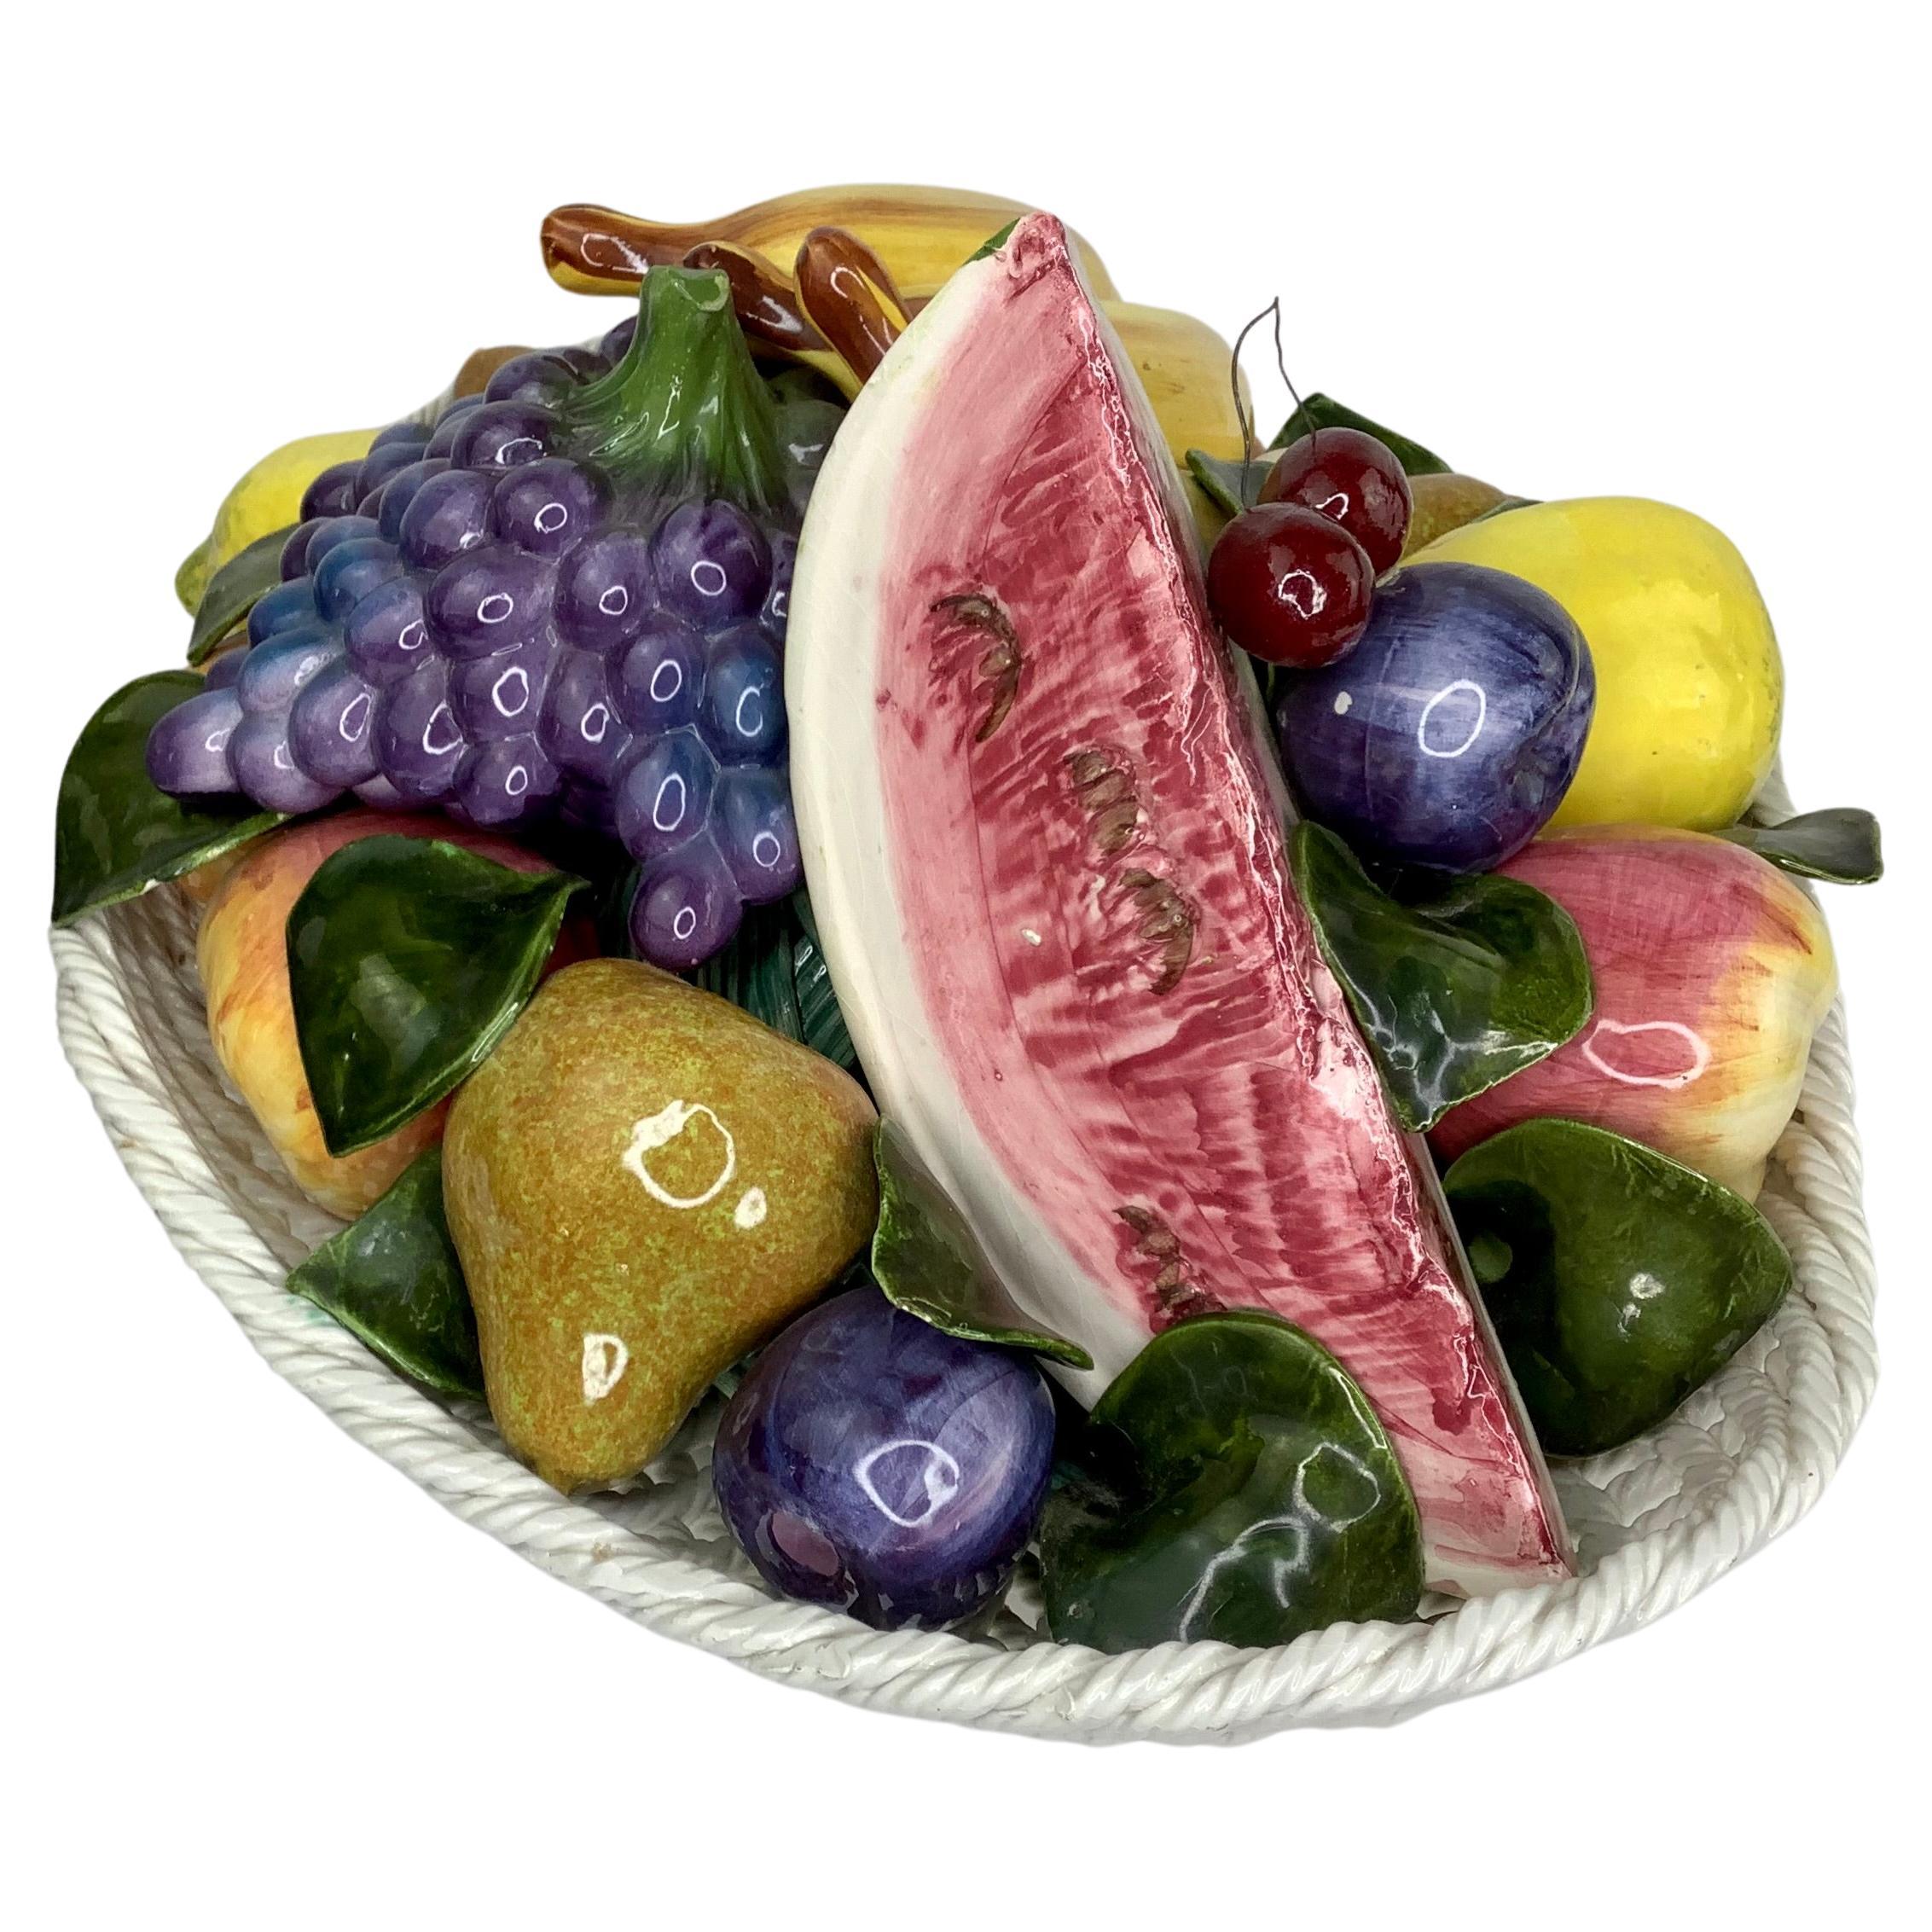 Large Italian Ceramic Fruit Form Basket